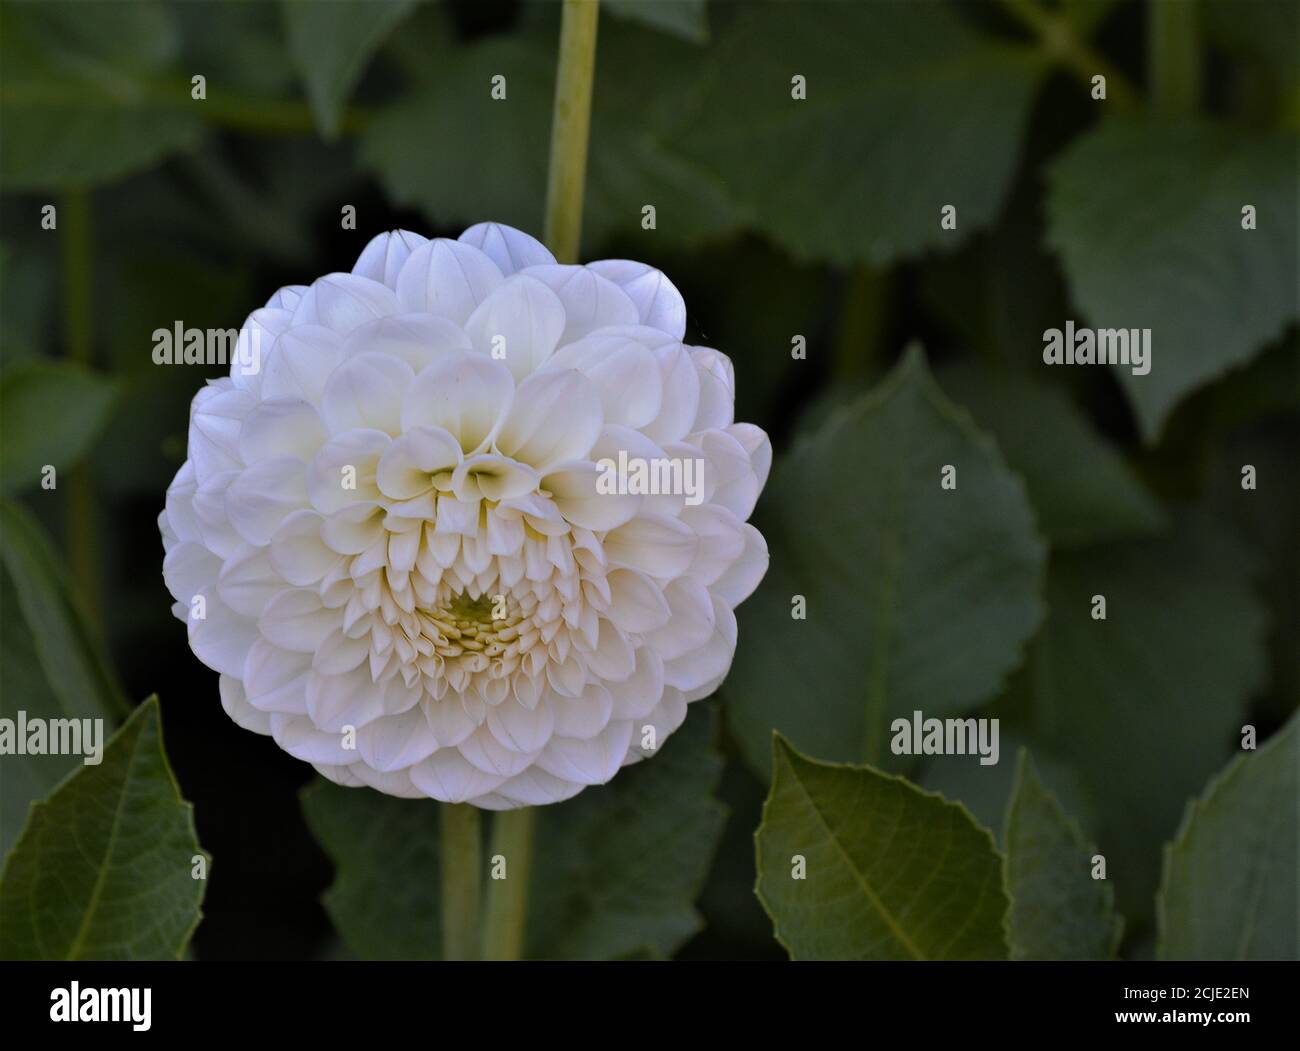 Die Blüten der weißen Pompom Dahlien und der Ball Dahlien sind kugelförmig und kompakt. Die Blütenblätter bilden ein Rohr, weil sie entlang der Lo aufgerollt werden Stockfoto